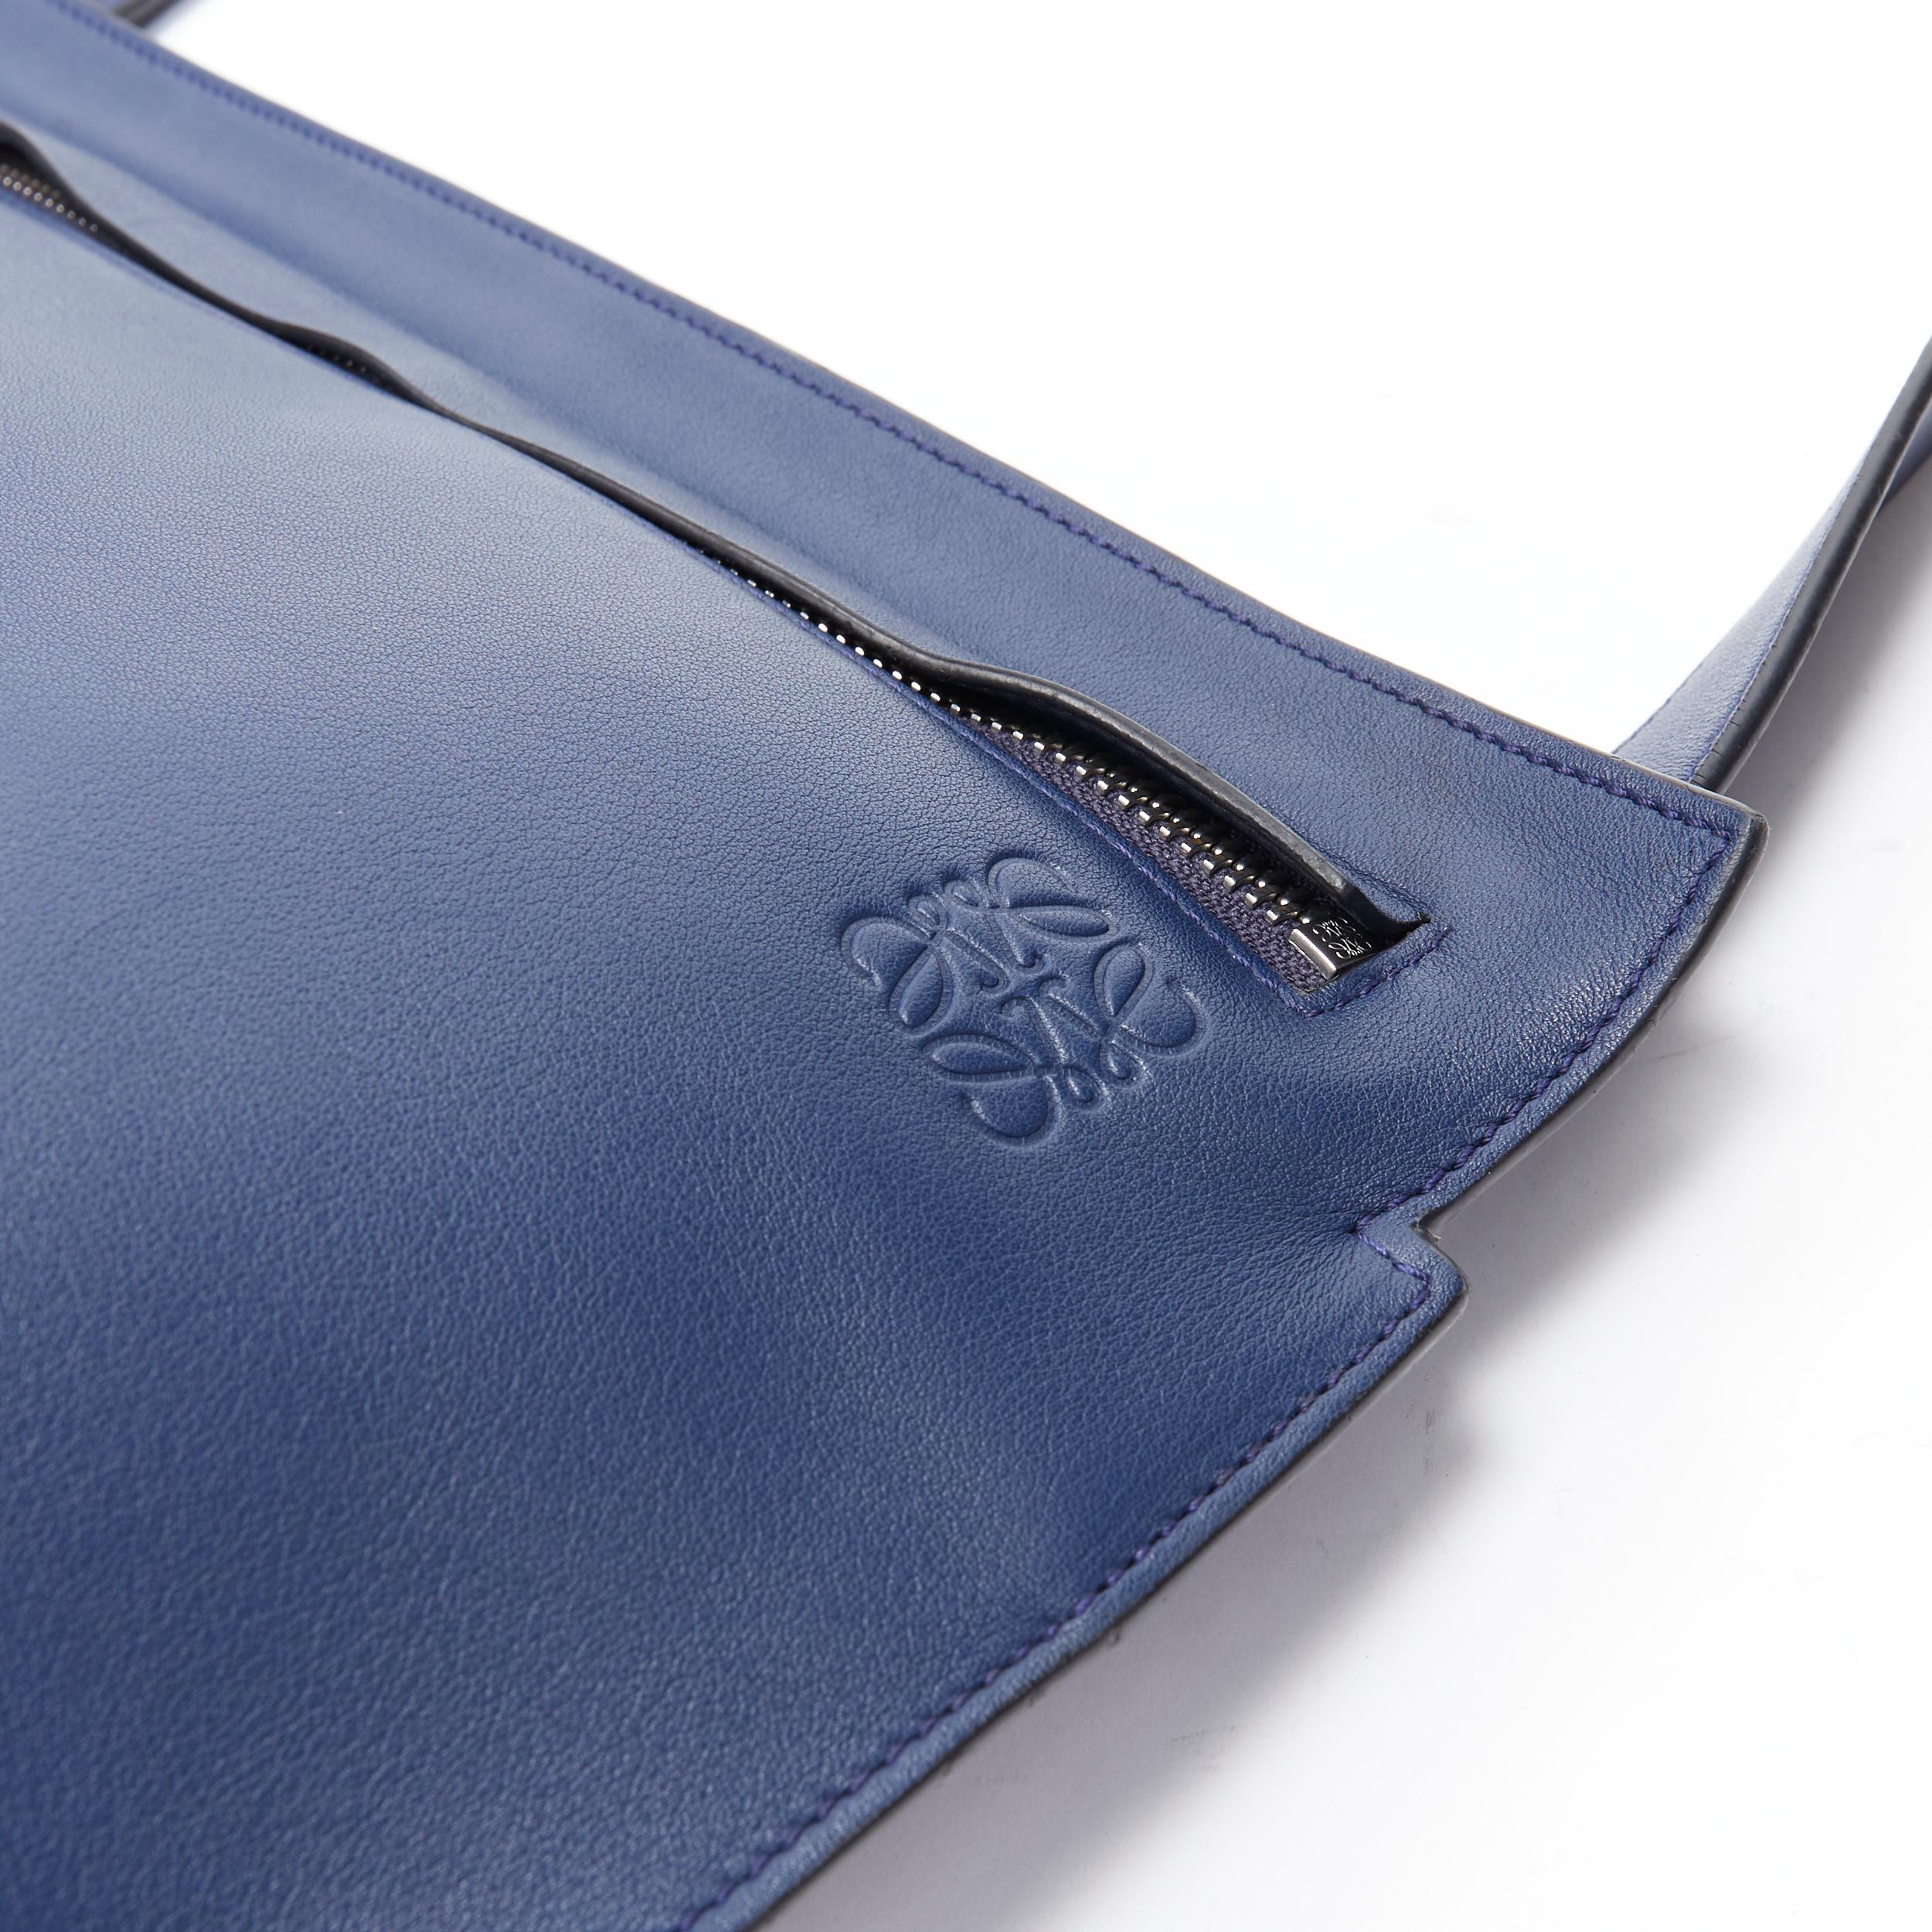 LOEWE 2017 T Messenger cuir bleu marine logo embossé zip crossbody messenger bag en vente 2